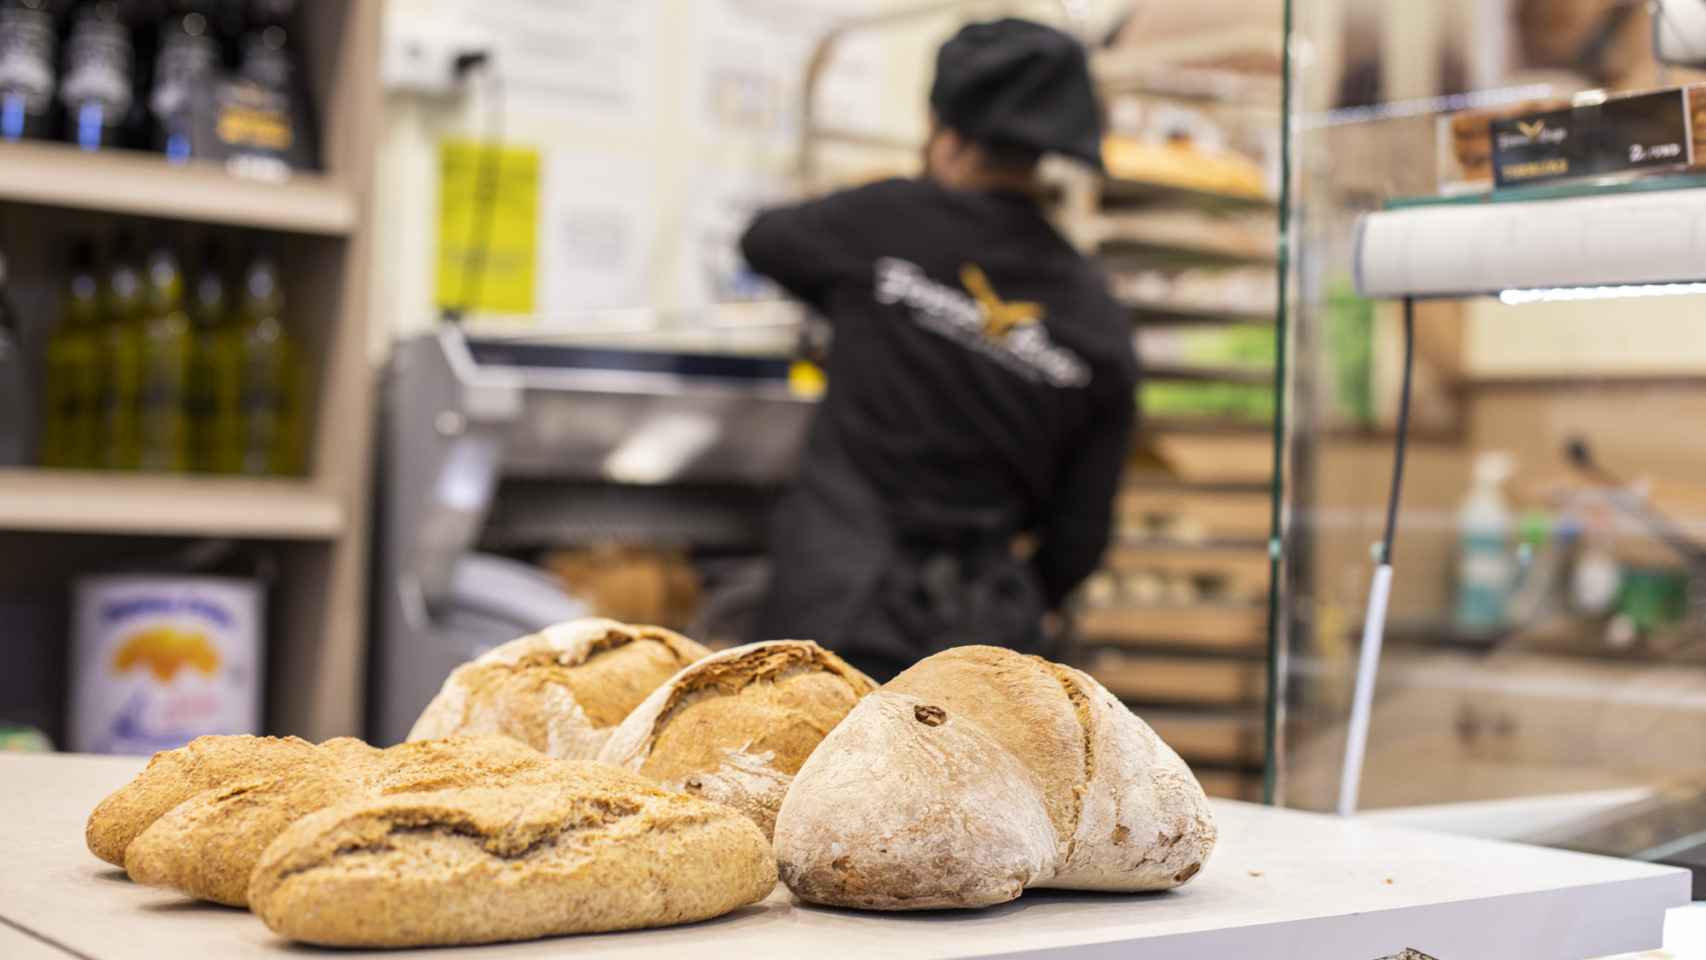 Los panes artesanales gallegos del Forno de Lugo y, de fondo, una trabajadora de la tienda.